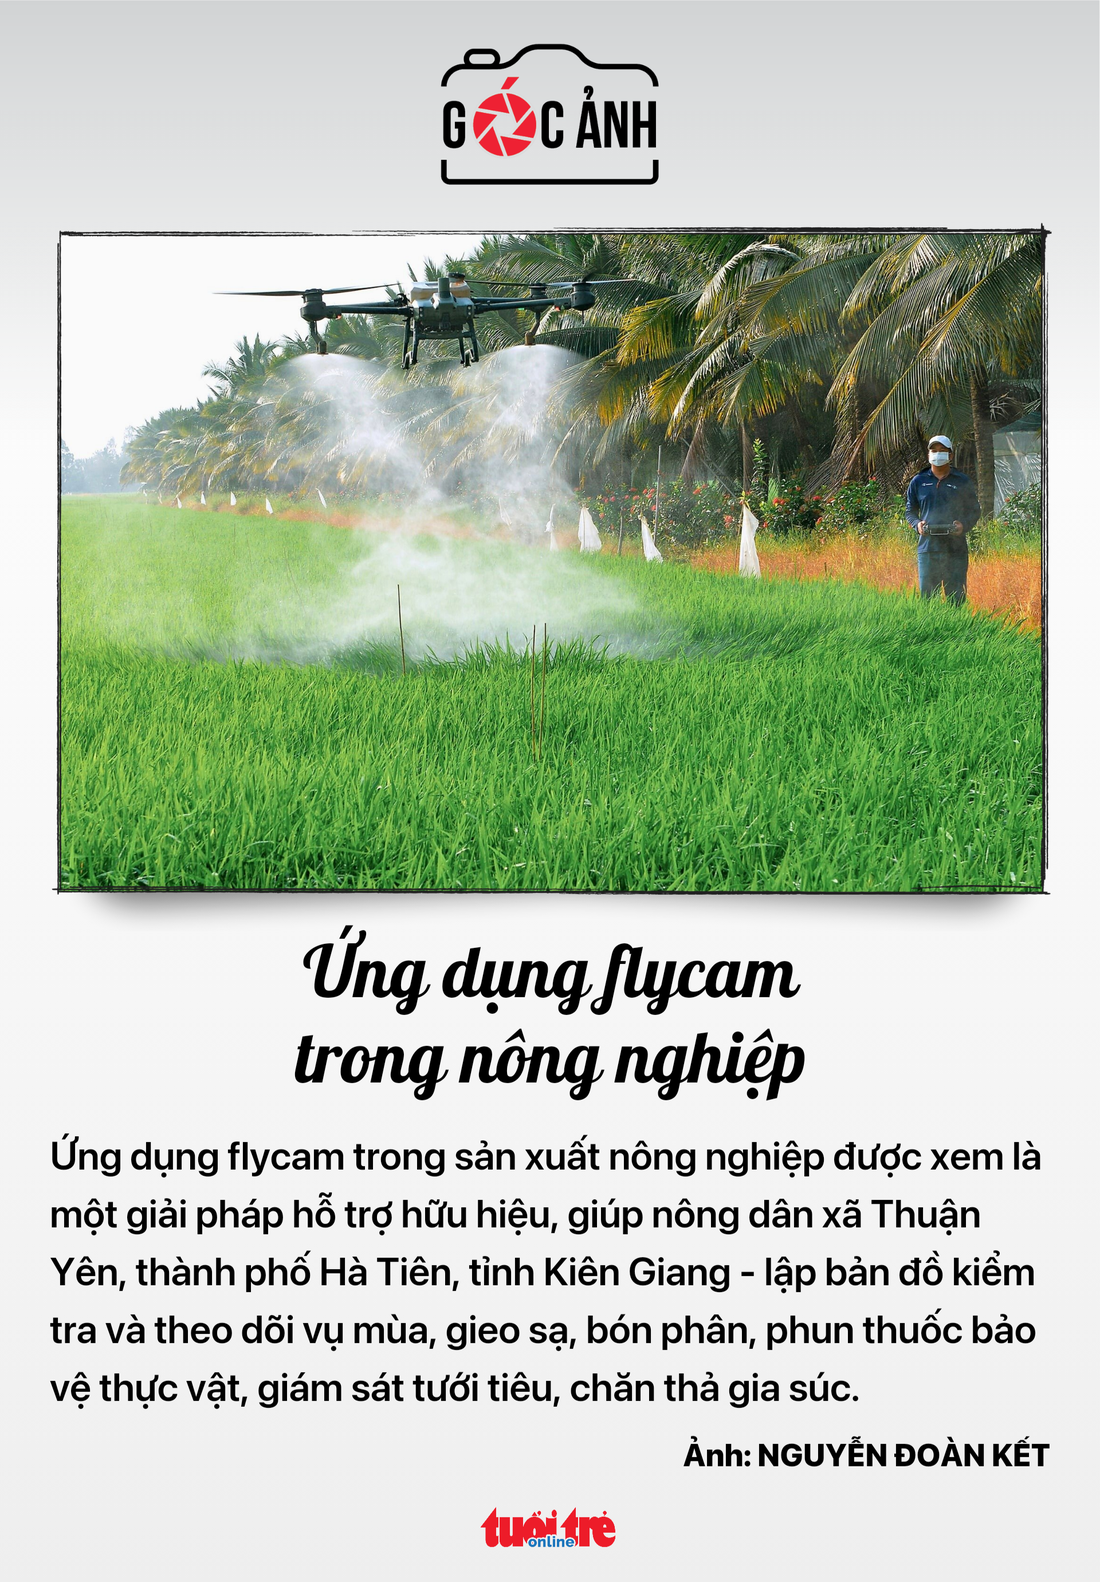 Ứng dụng flycam trong nông nghiệp - Ảnh: NGUYỄN ĐOÀN KẾT